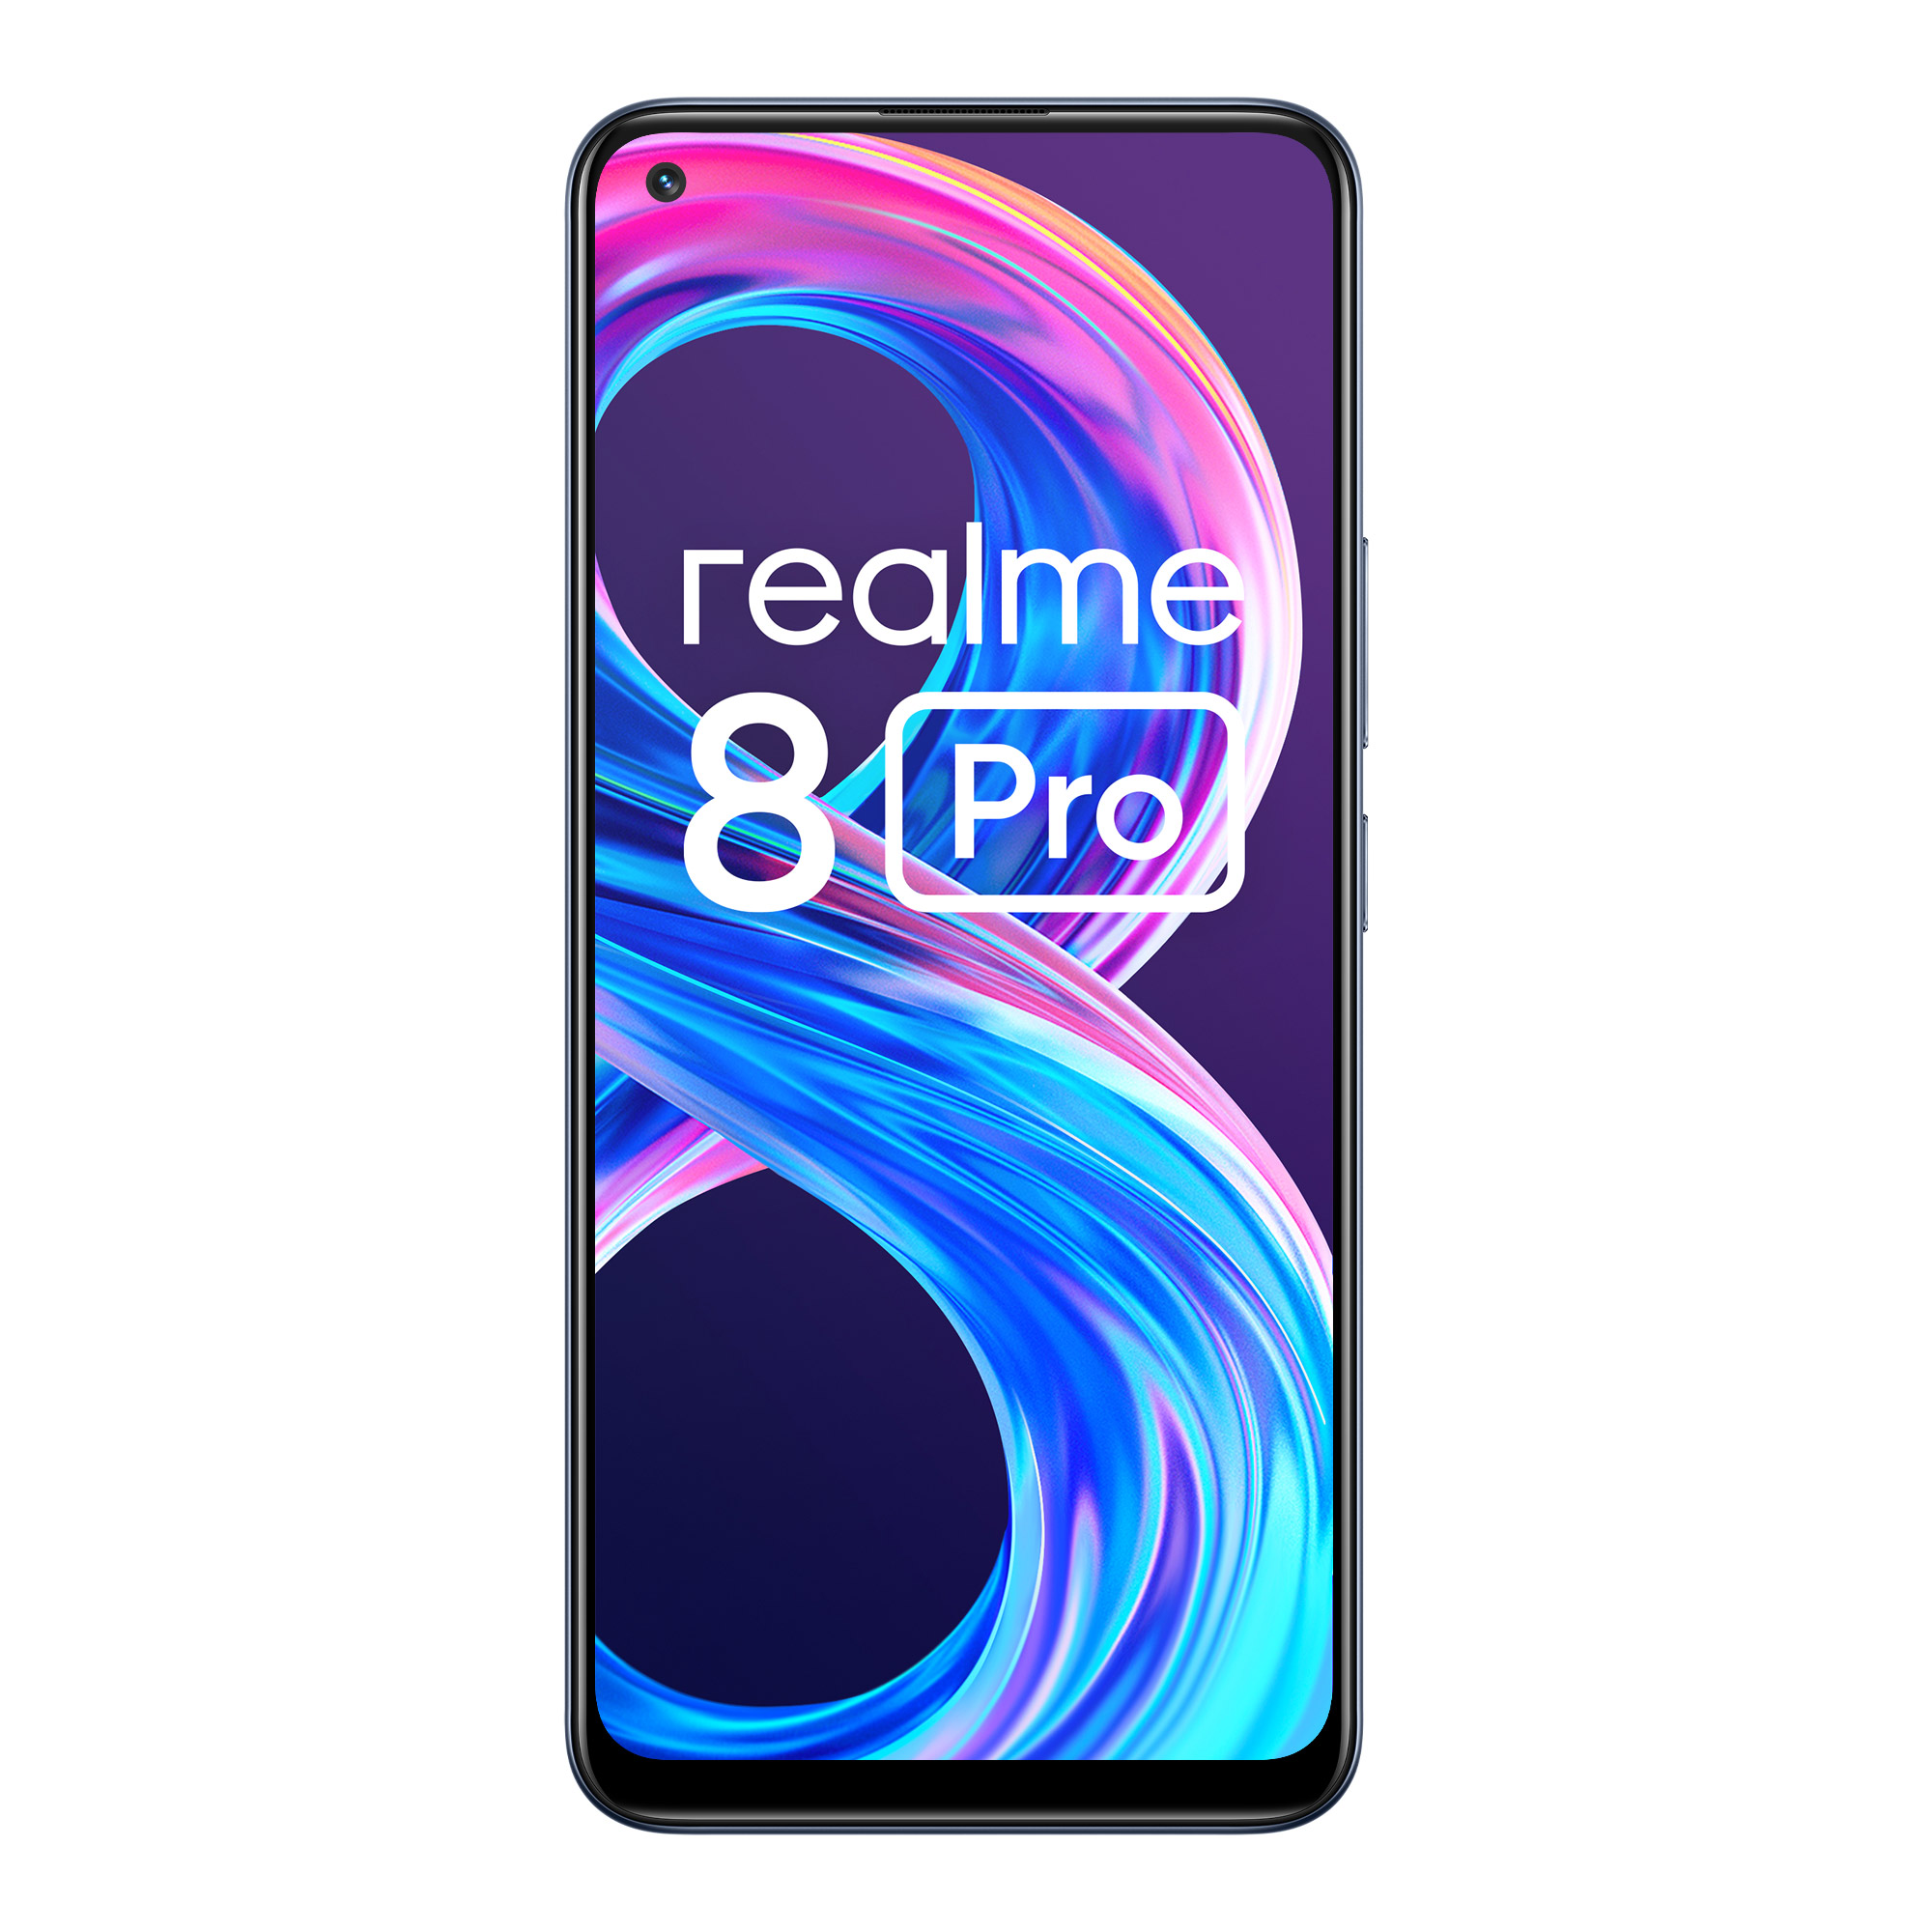 Realme launches realme 8 Pro